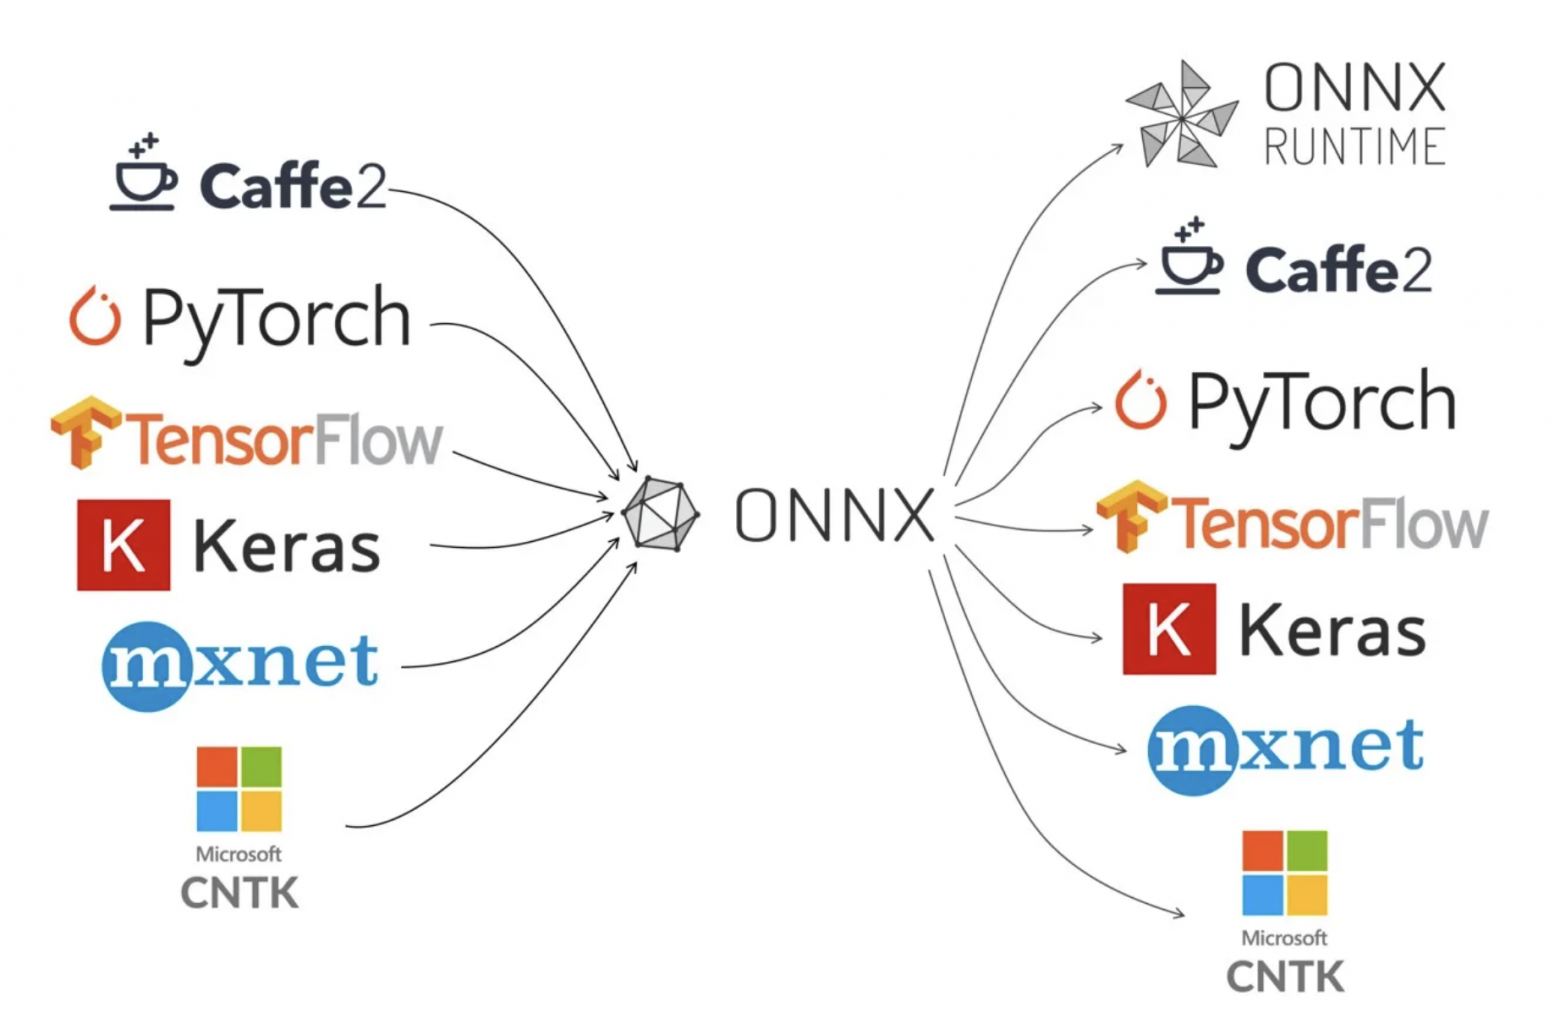 ONNX конвертируется в обе стороны с большинством параметров